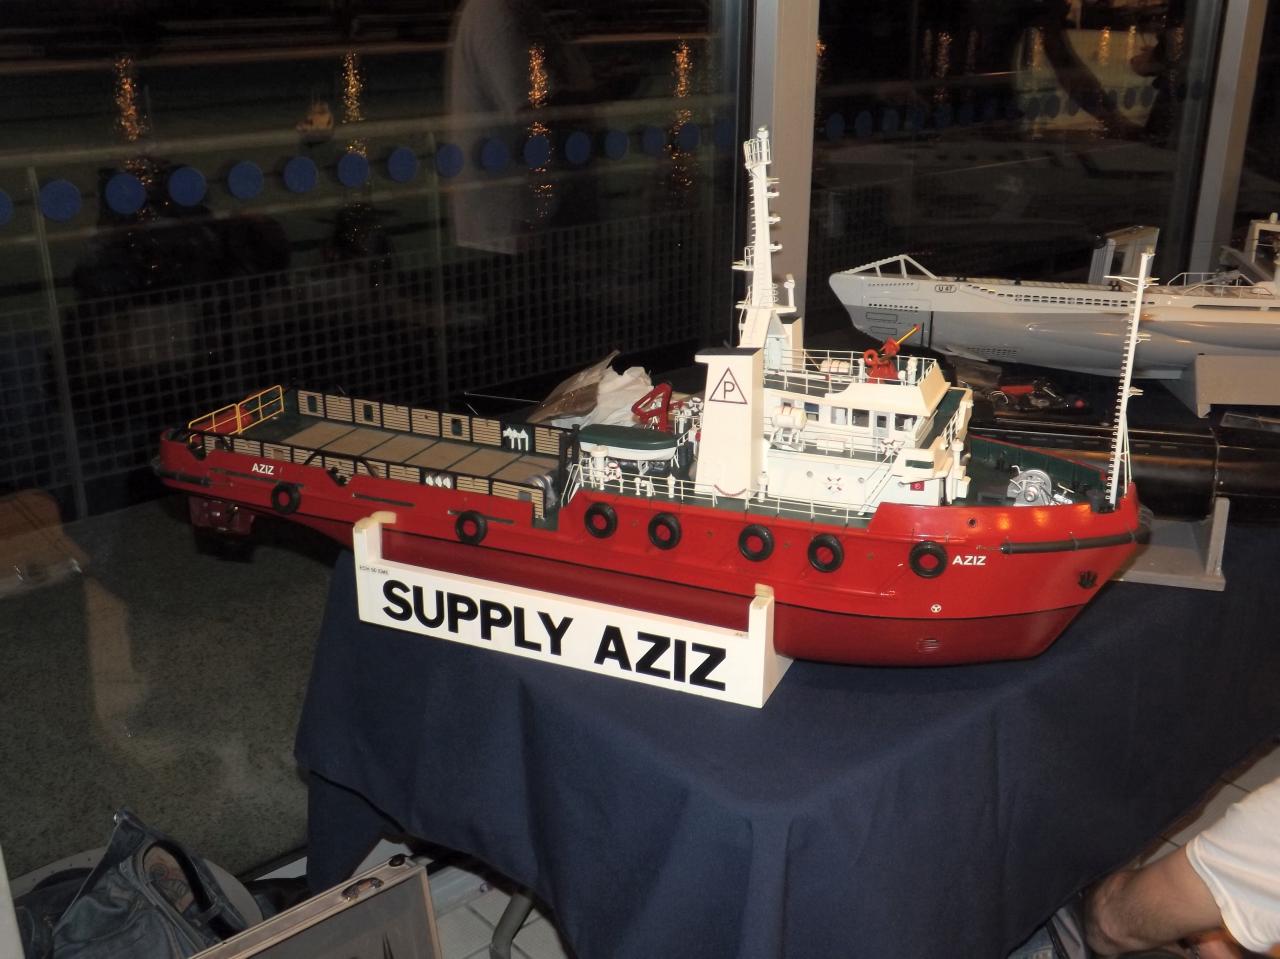 Supply AZIZ